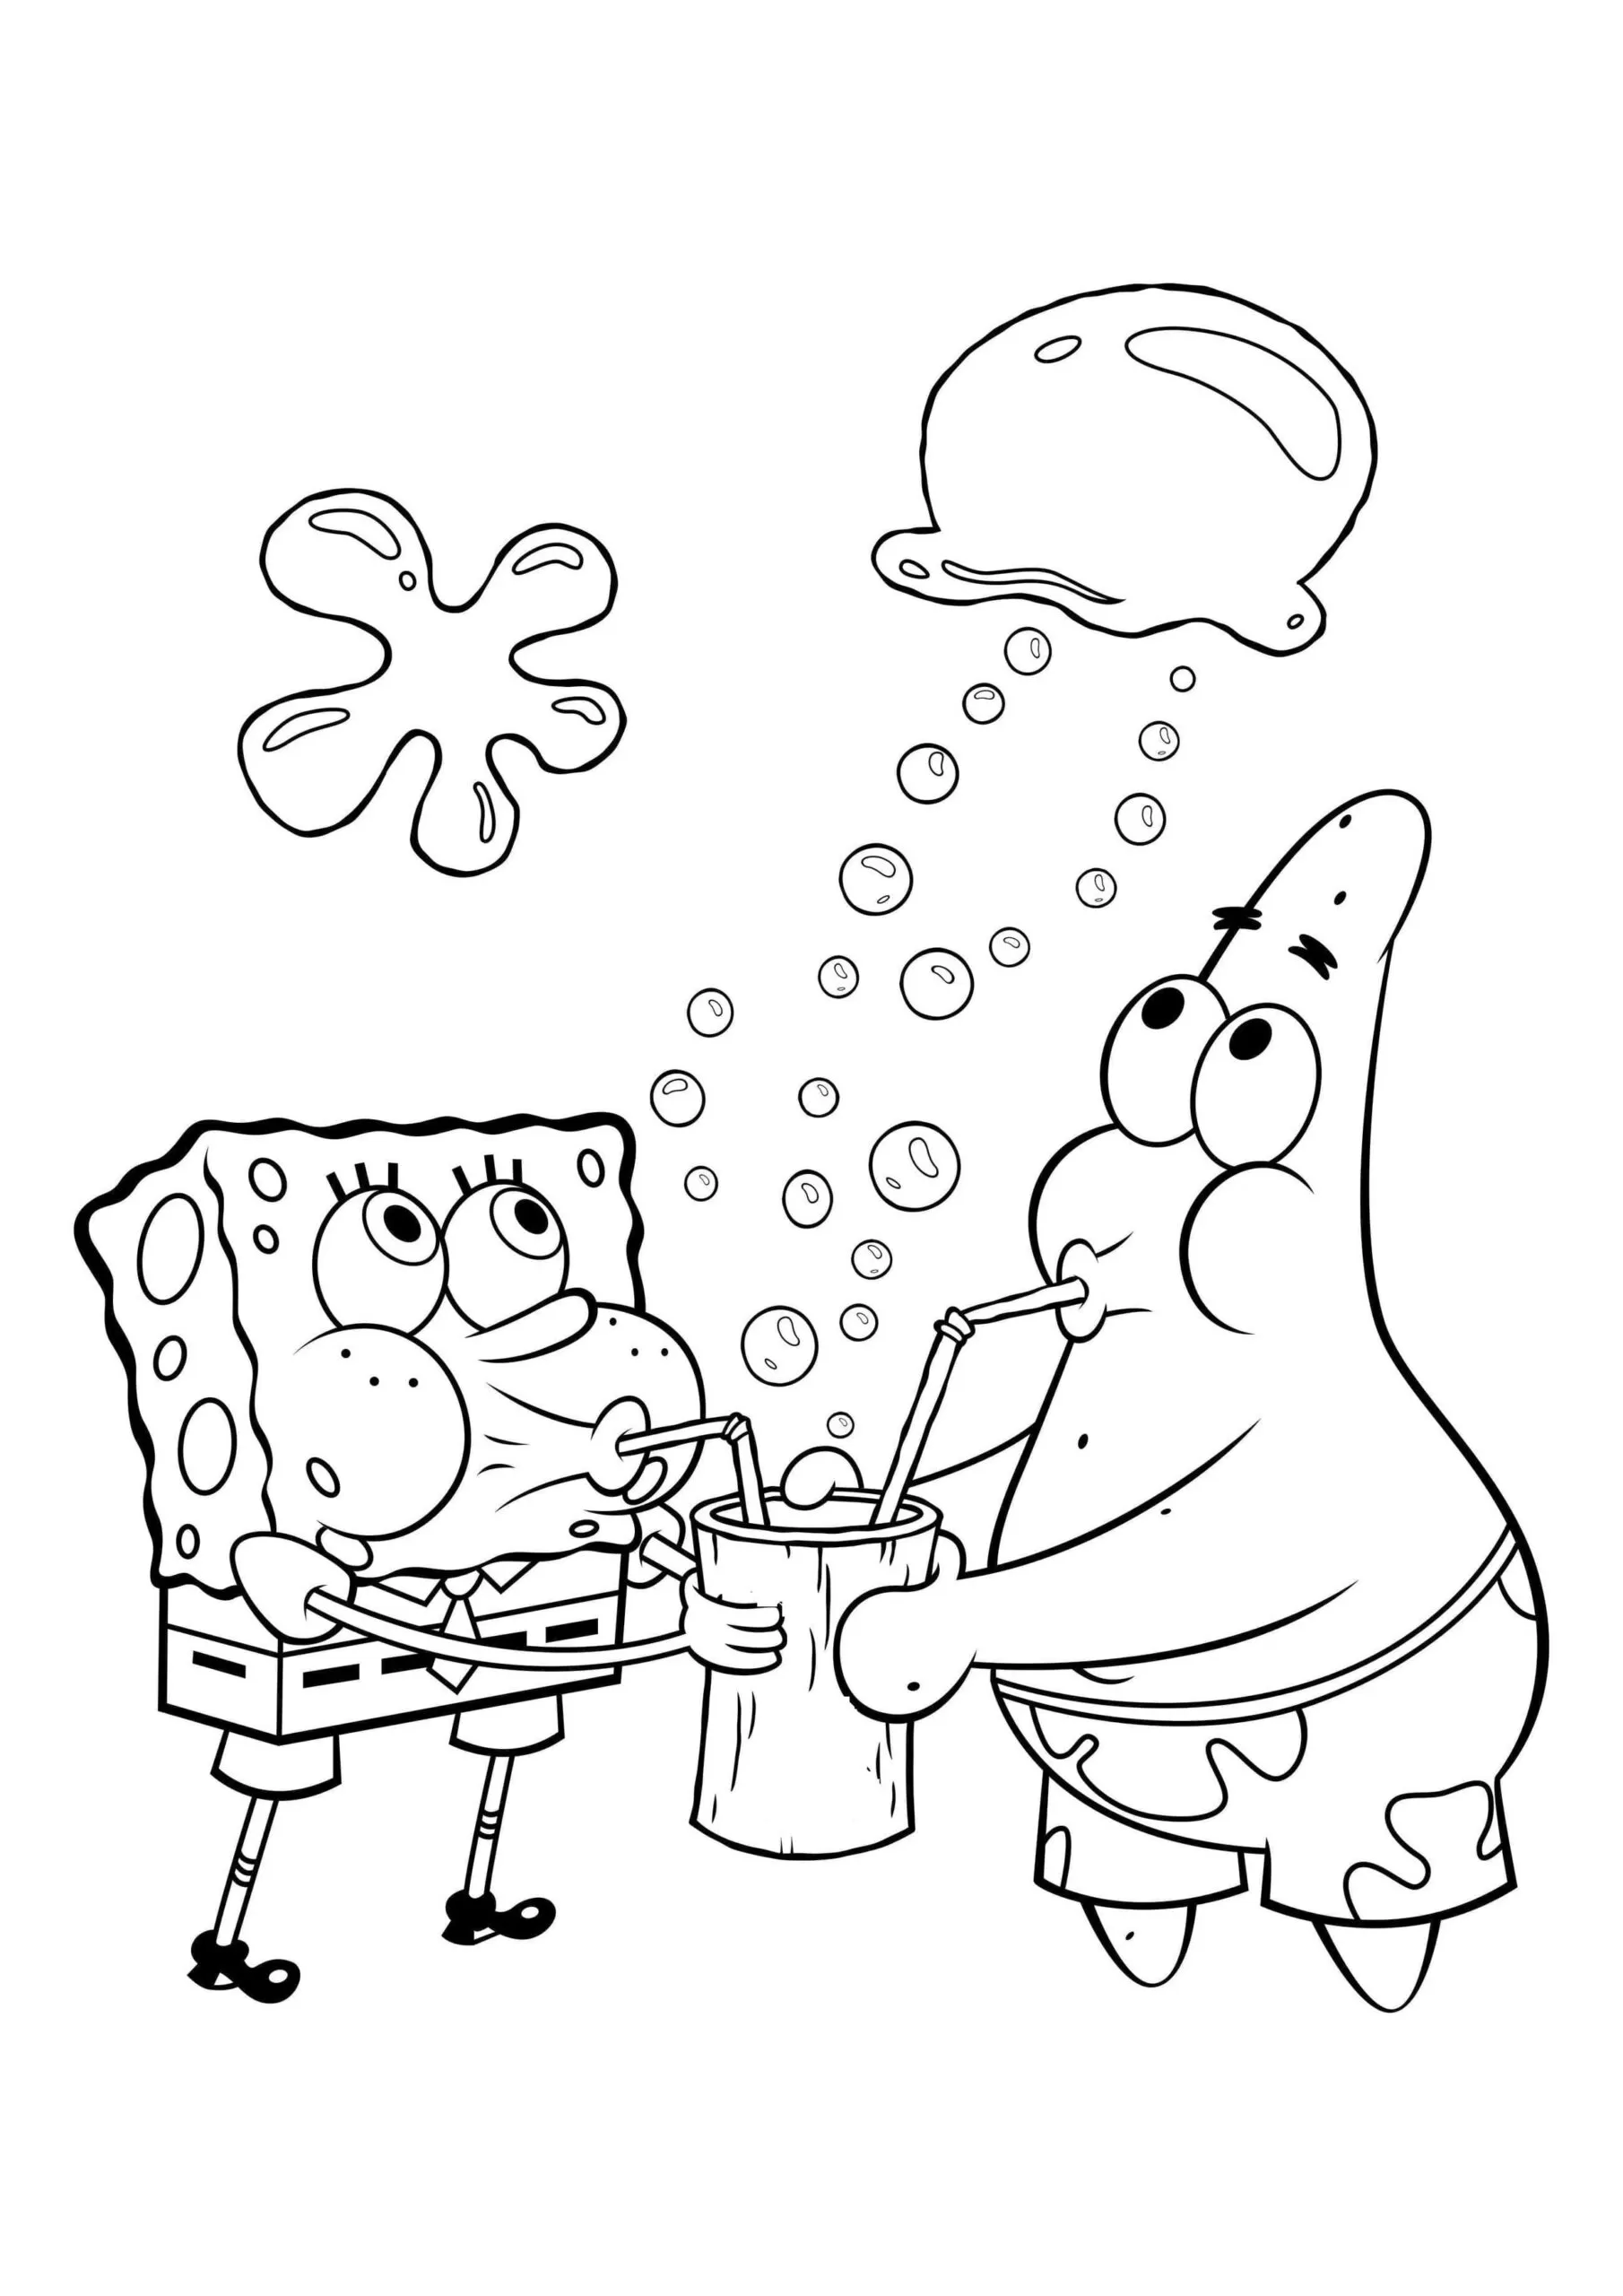 Desenhos para colorir do melhor amigo de Bob Esponja e Patrick - Desenhos  para colorir grátis para imprimir